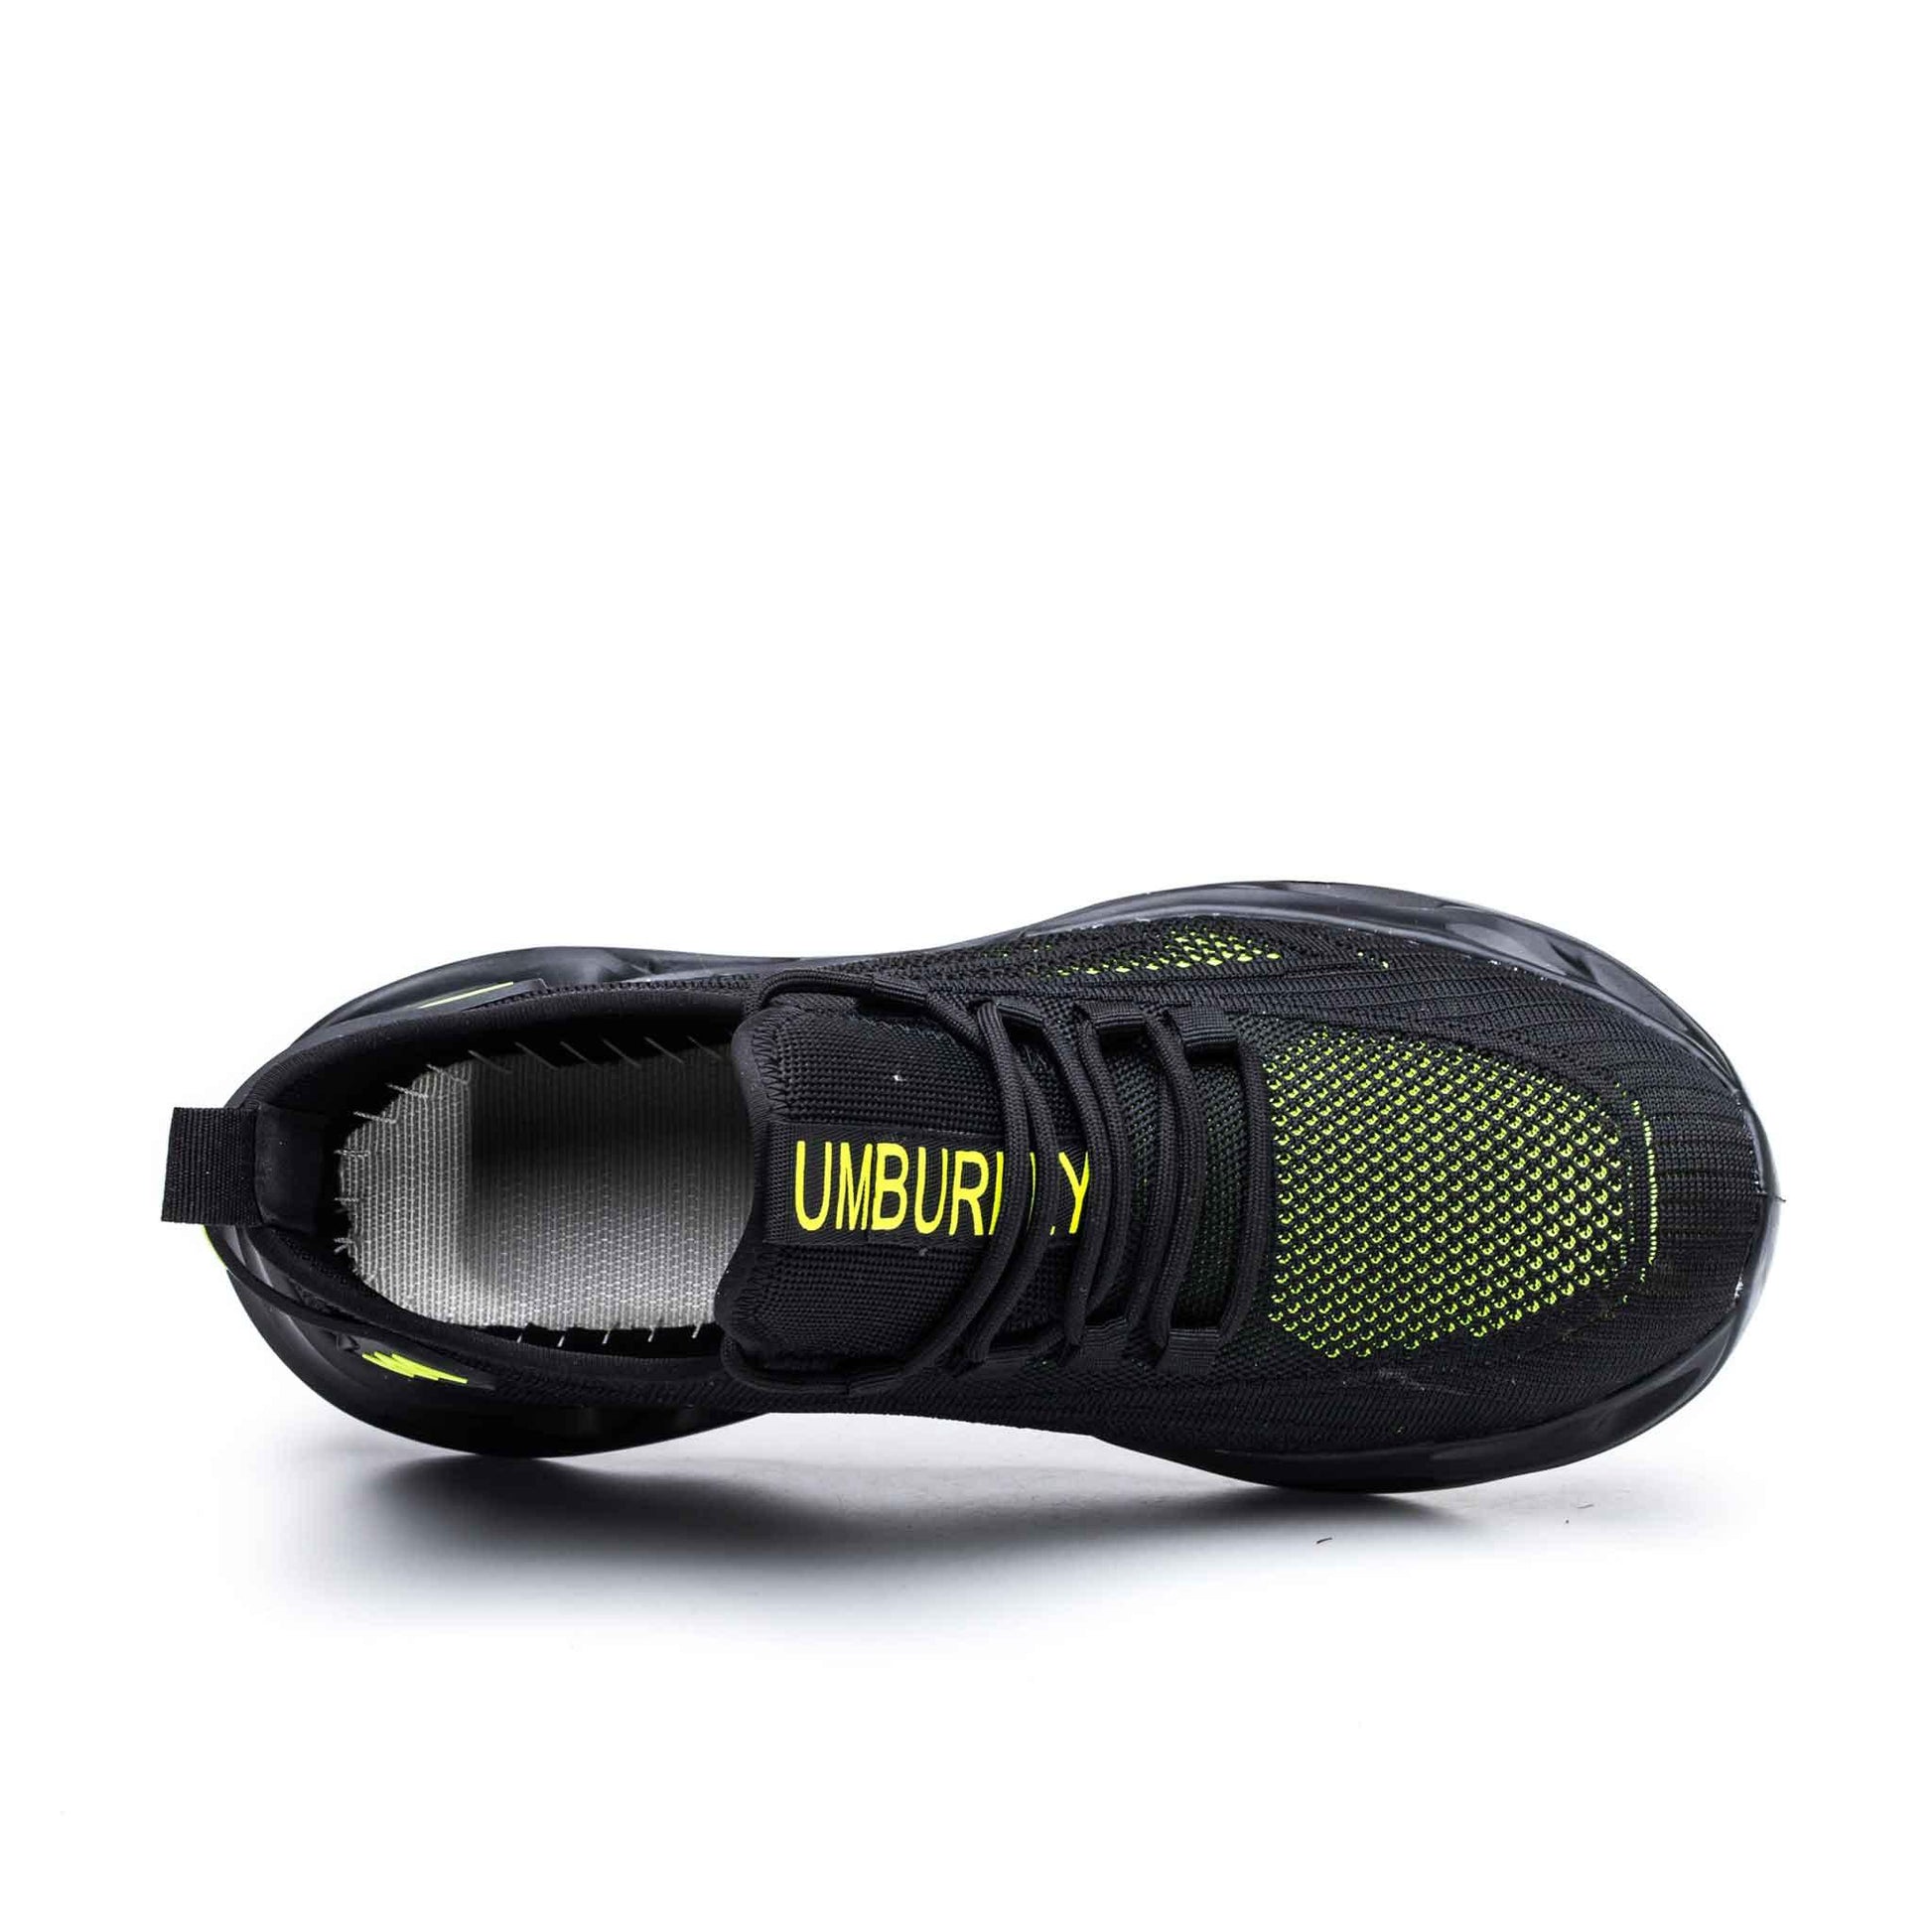 Women's Steel Toe Sneakers - Breathable | B234 - USINE PRO Footwear